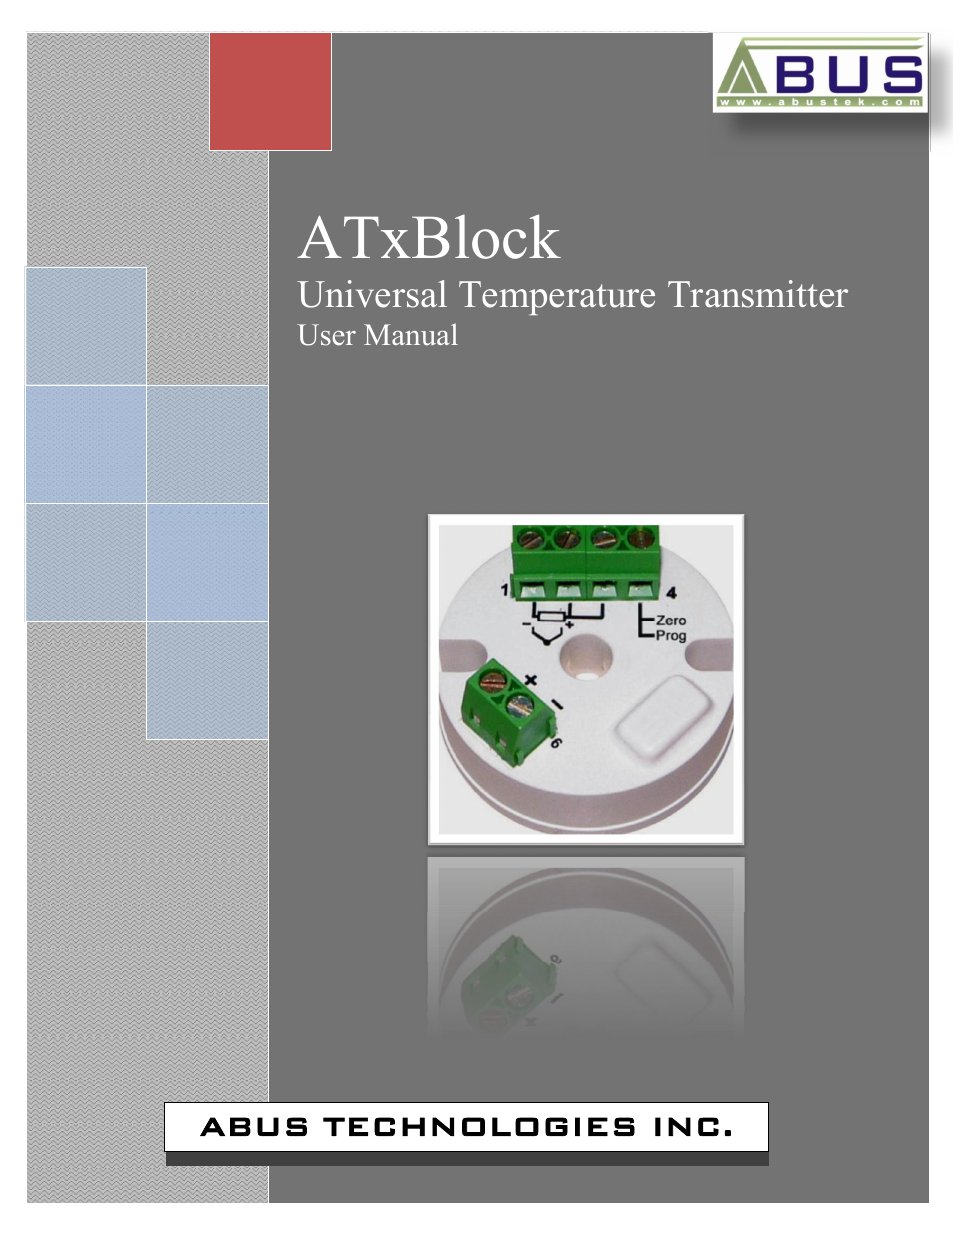 ATxBlock Temperature Transmitter